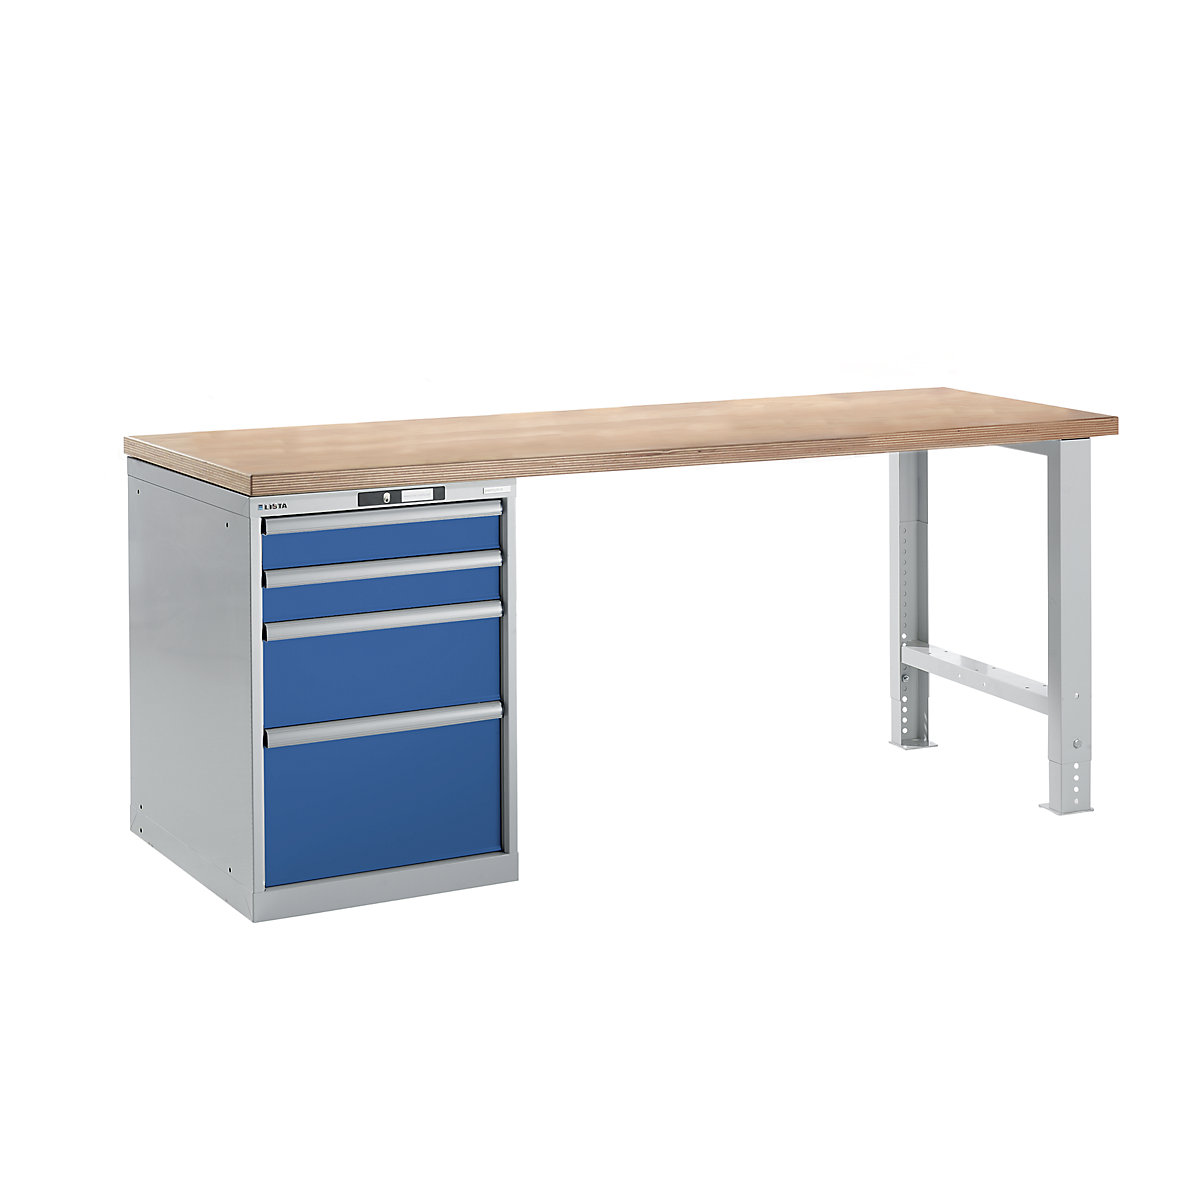 Sistema de bancadas de trabalho – LISTA, altura 840 mm, armário inferior, 4 gavetas, azul genciana, largura da mesa 2000 mm-9